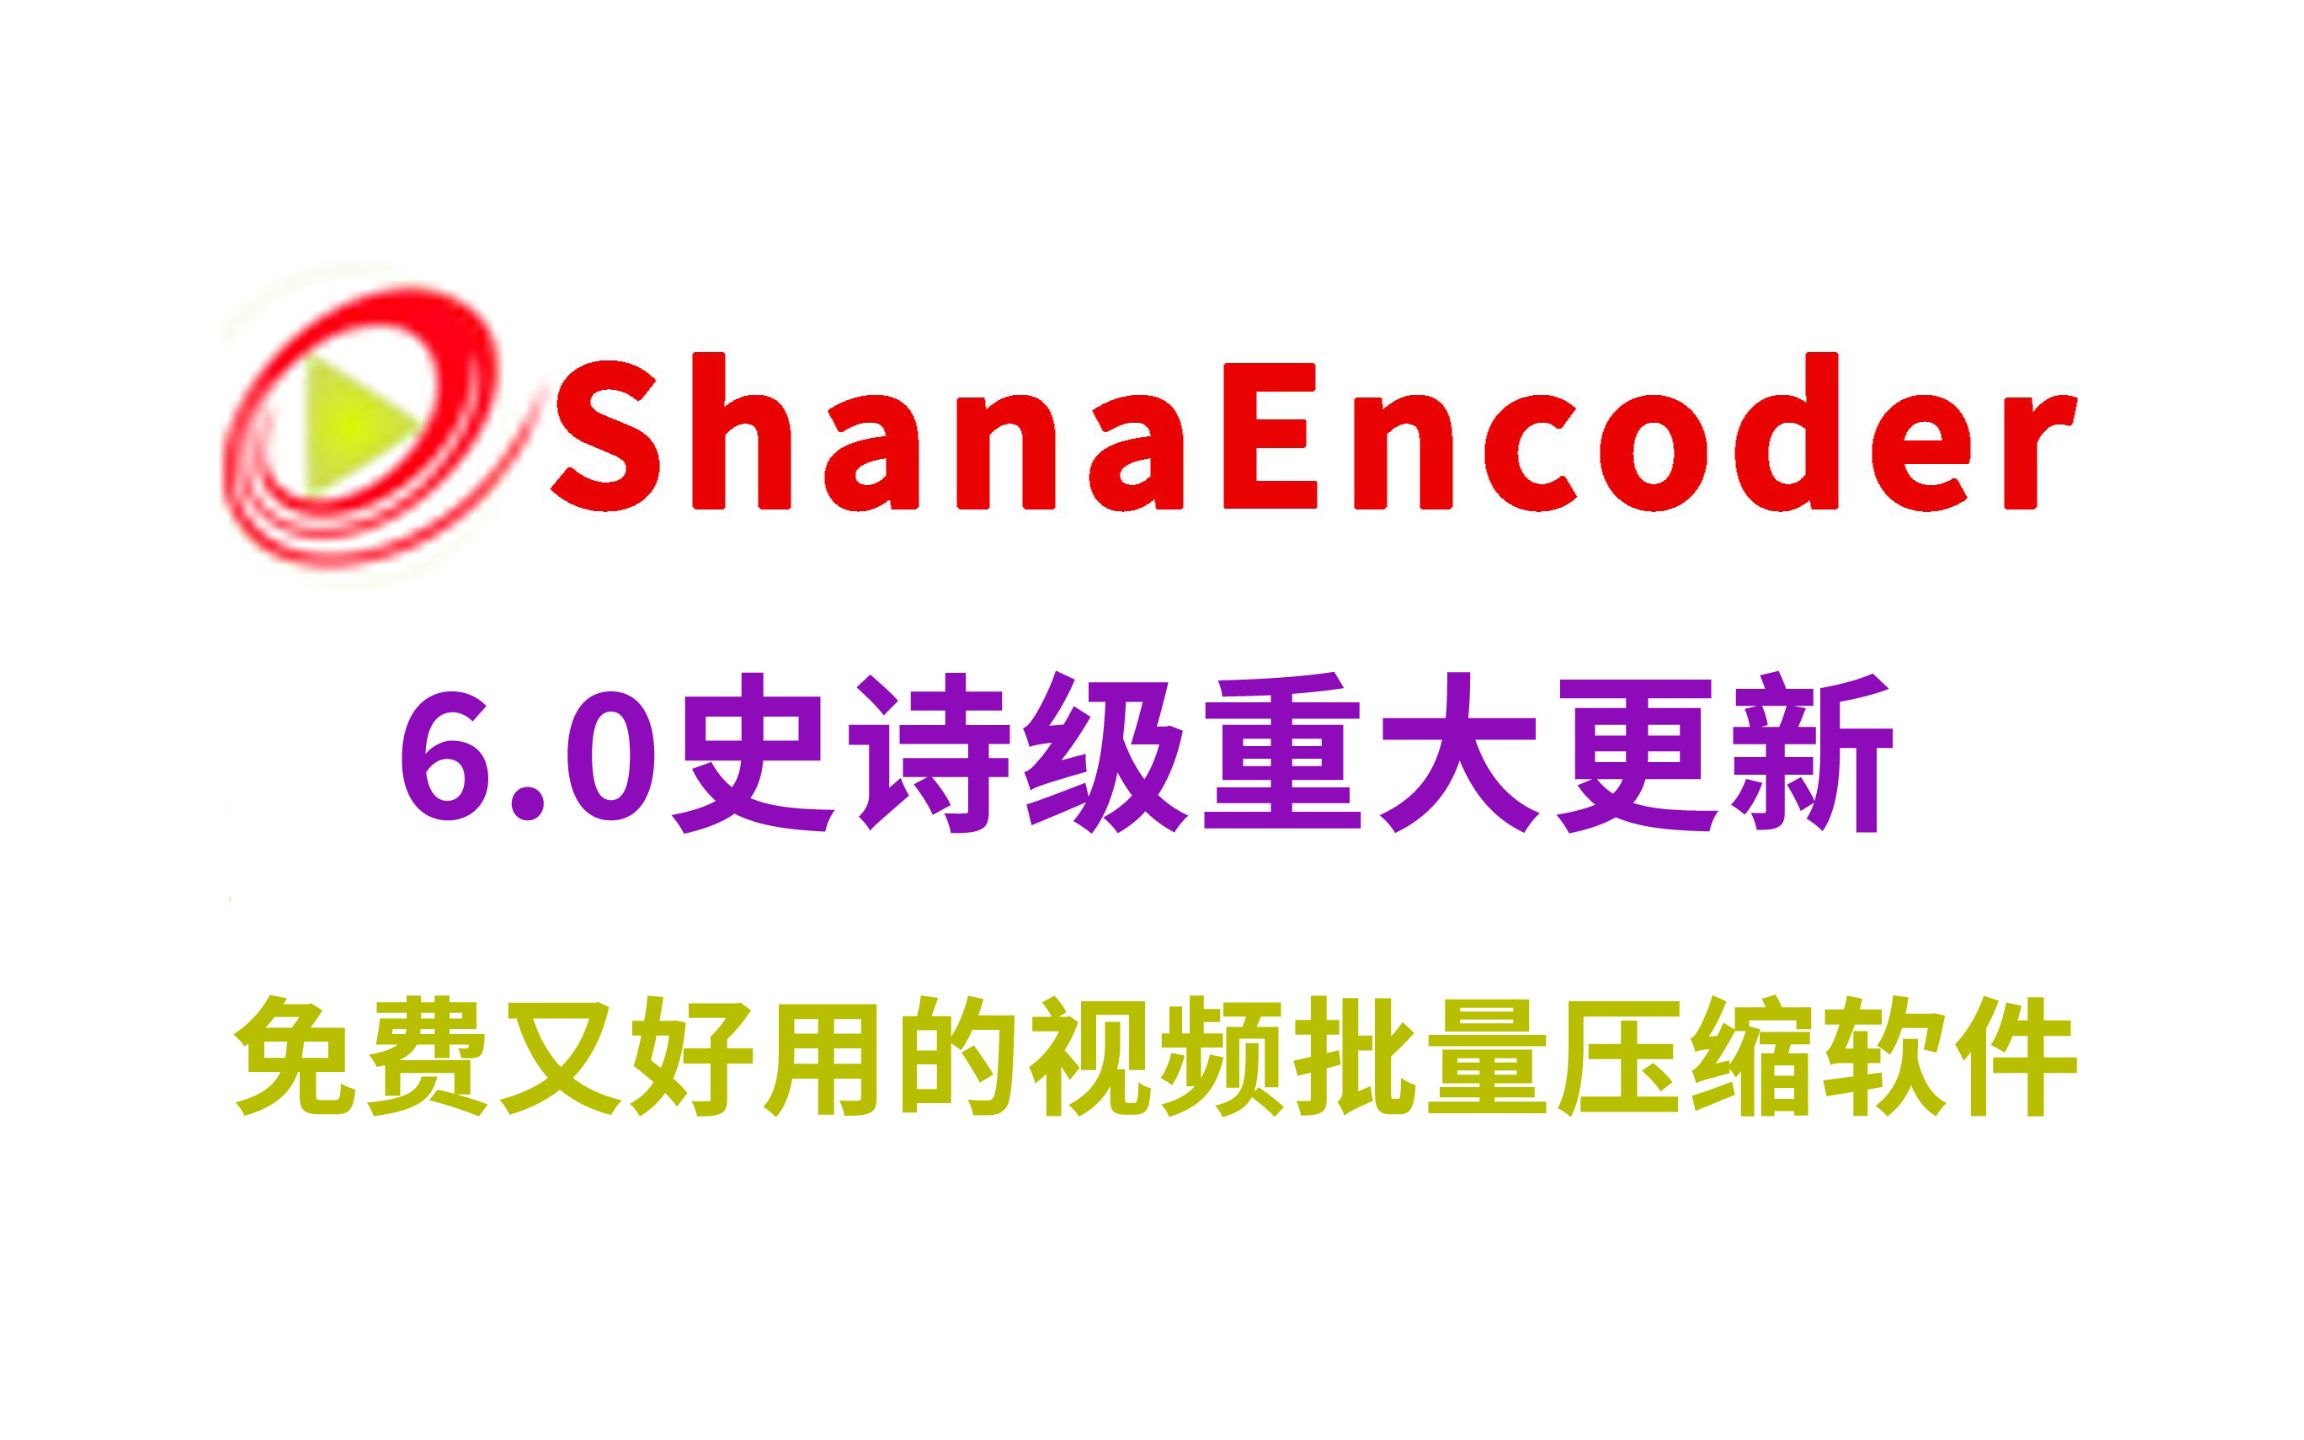 ShanaEncoder 6.0.1.7 download